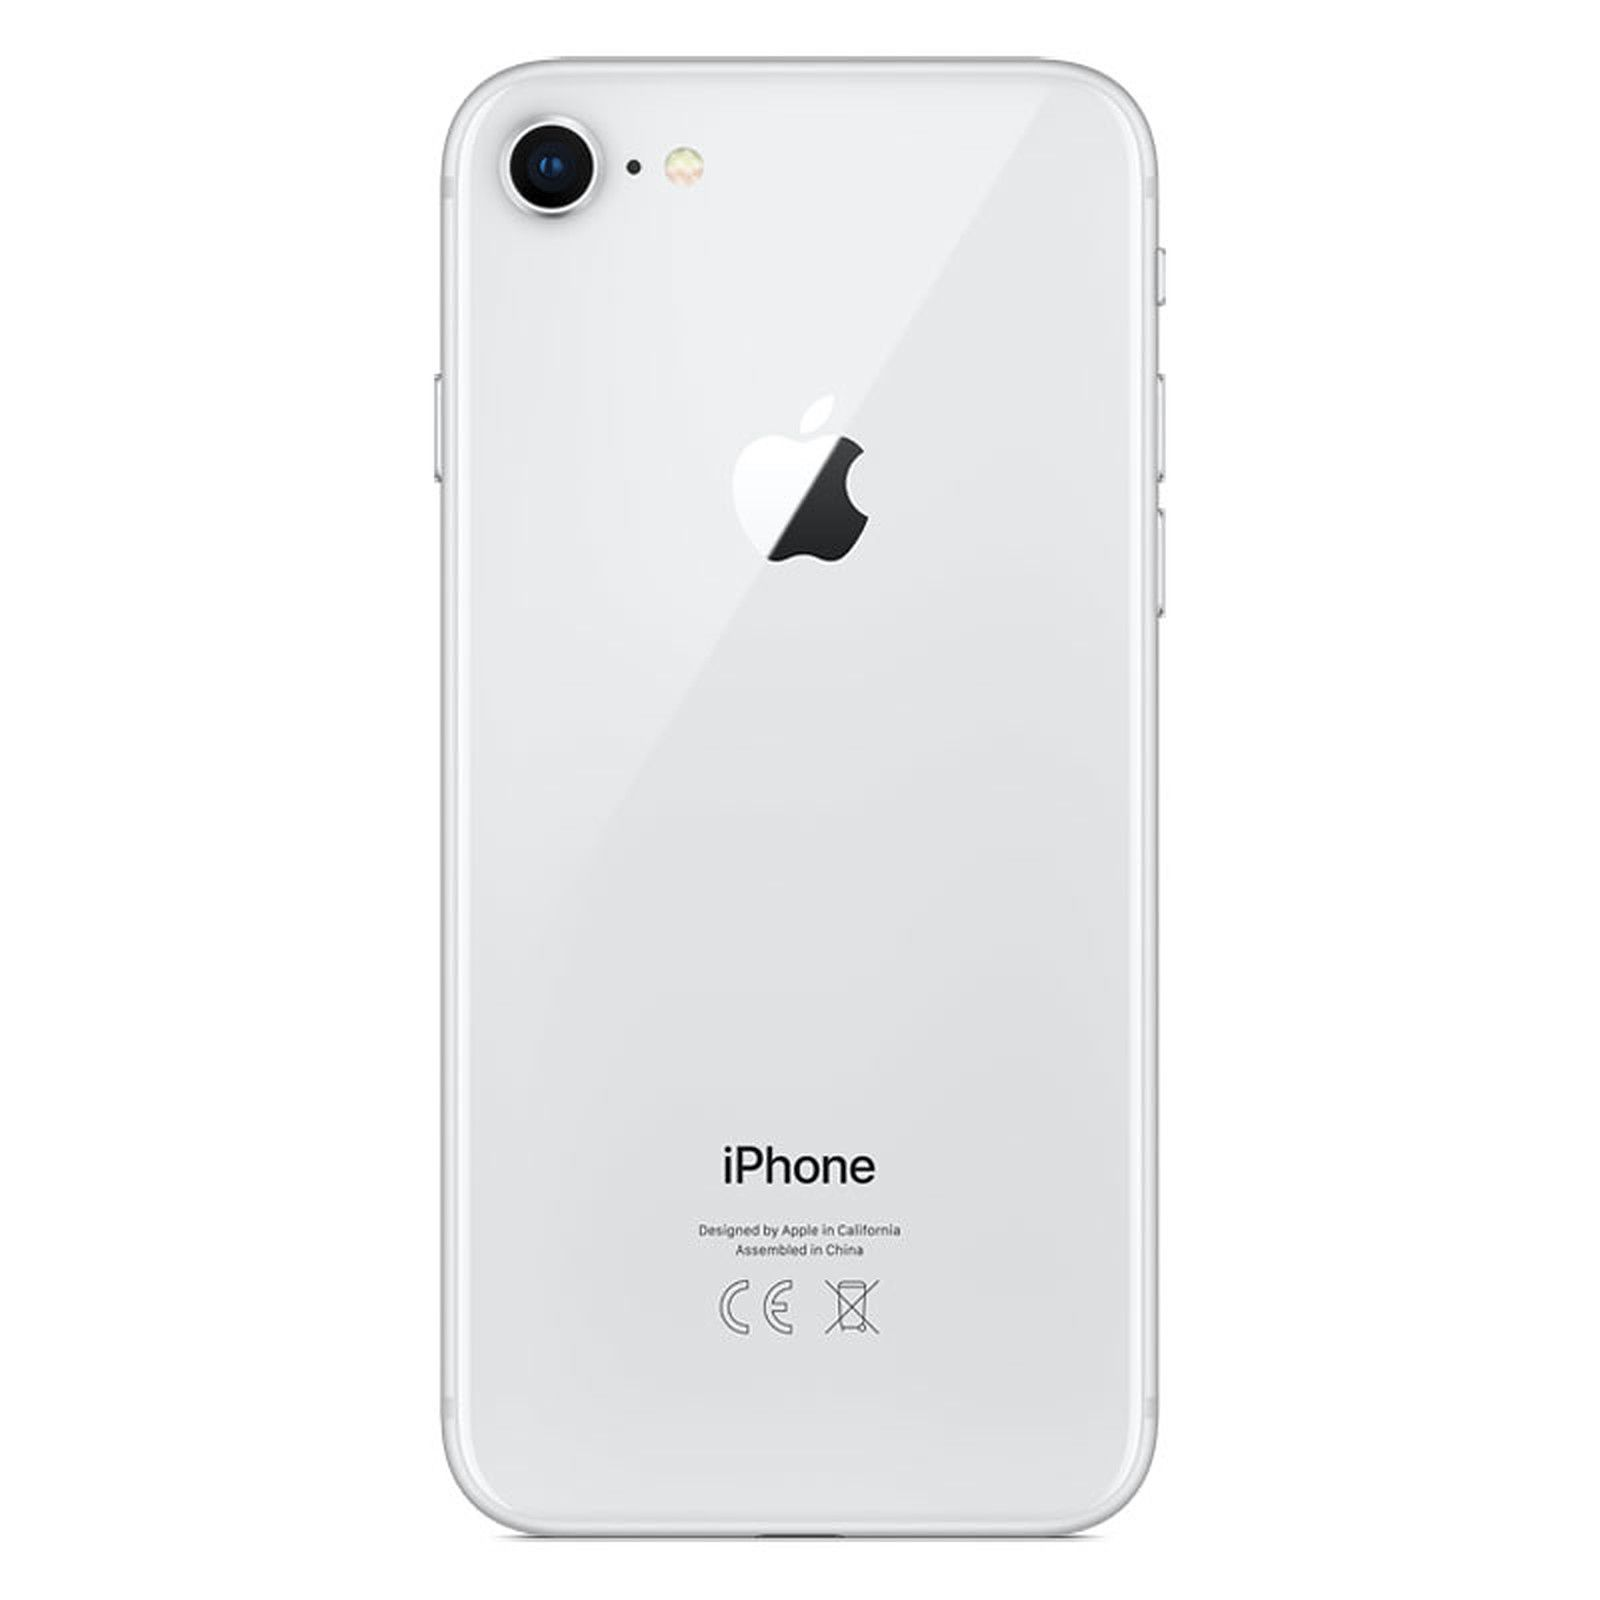 APPLE Silber 8 128 GB iPhone GB REFURBISHED (*) 128